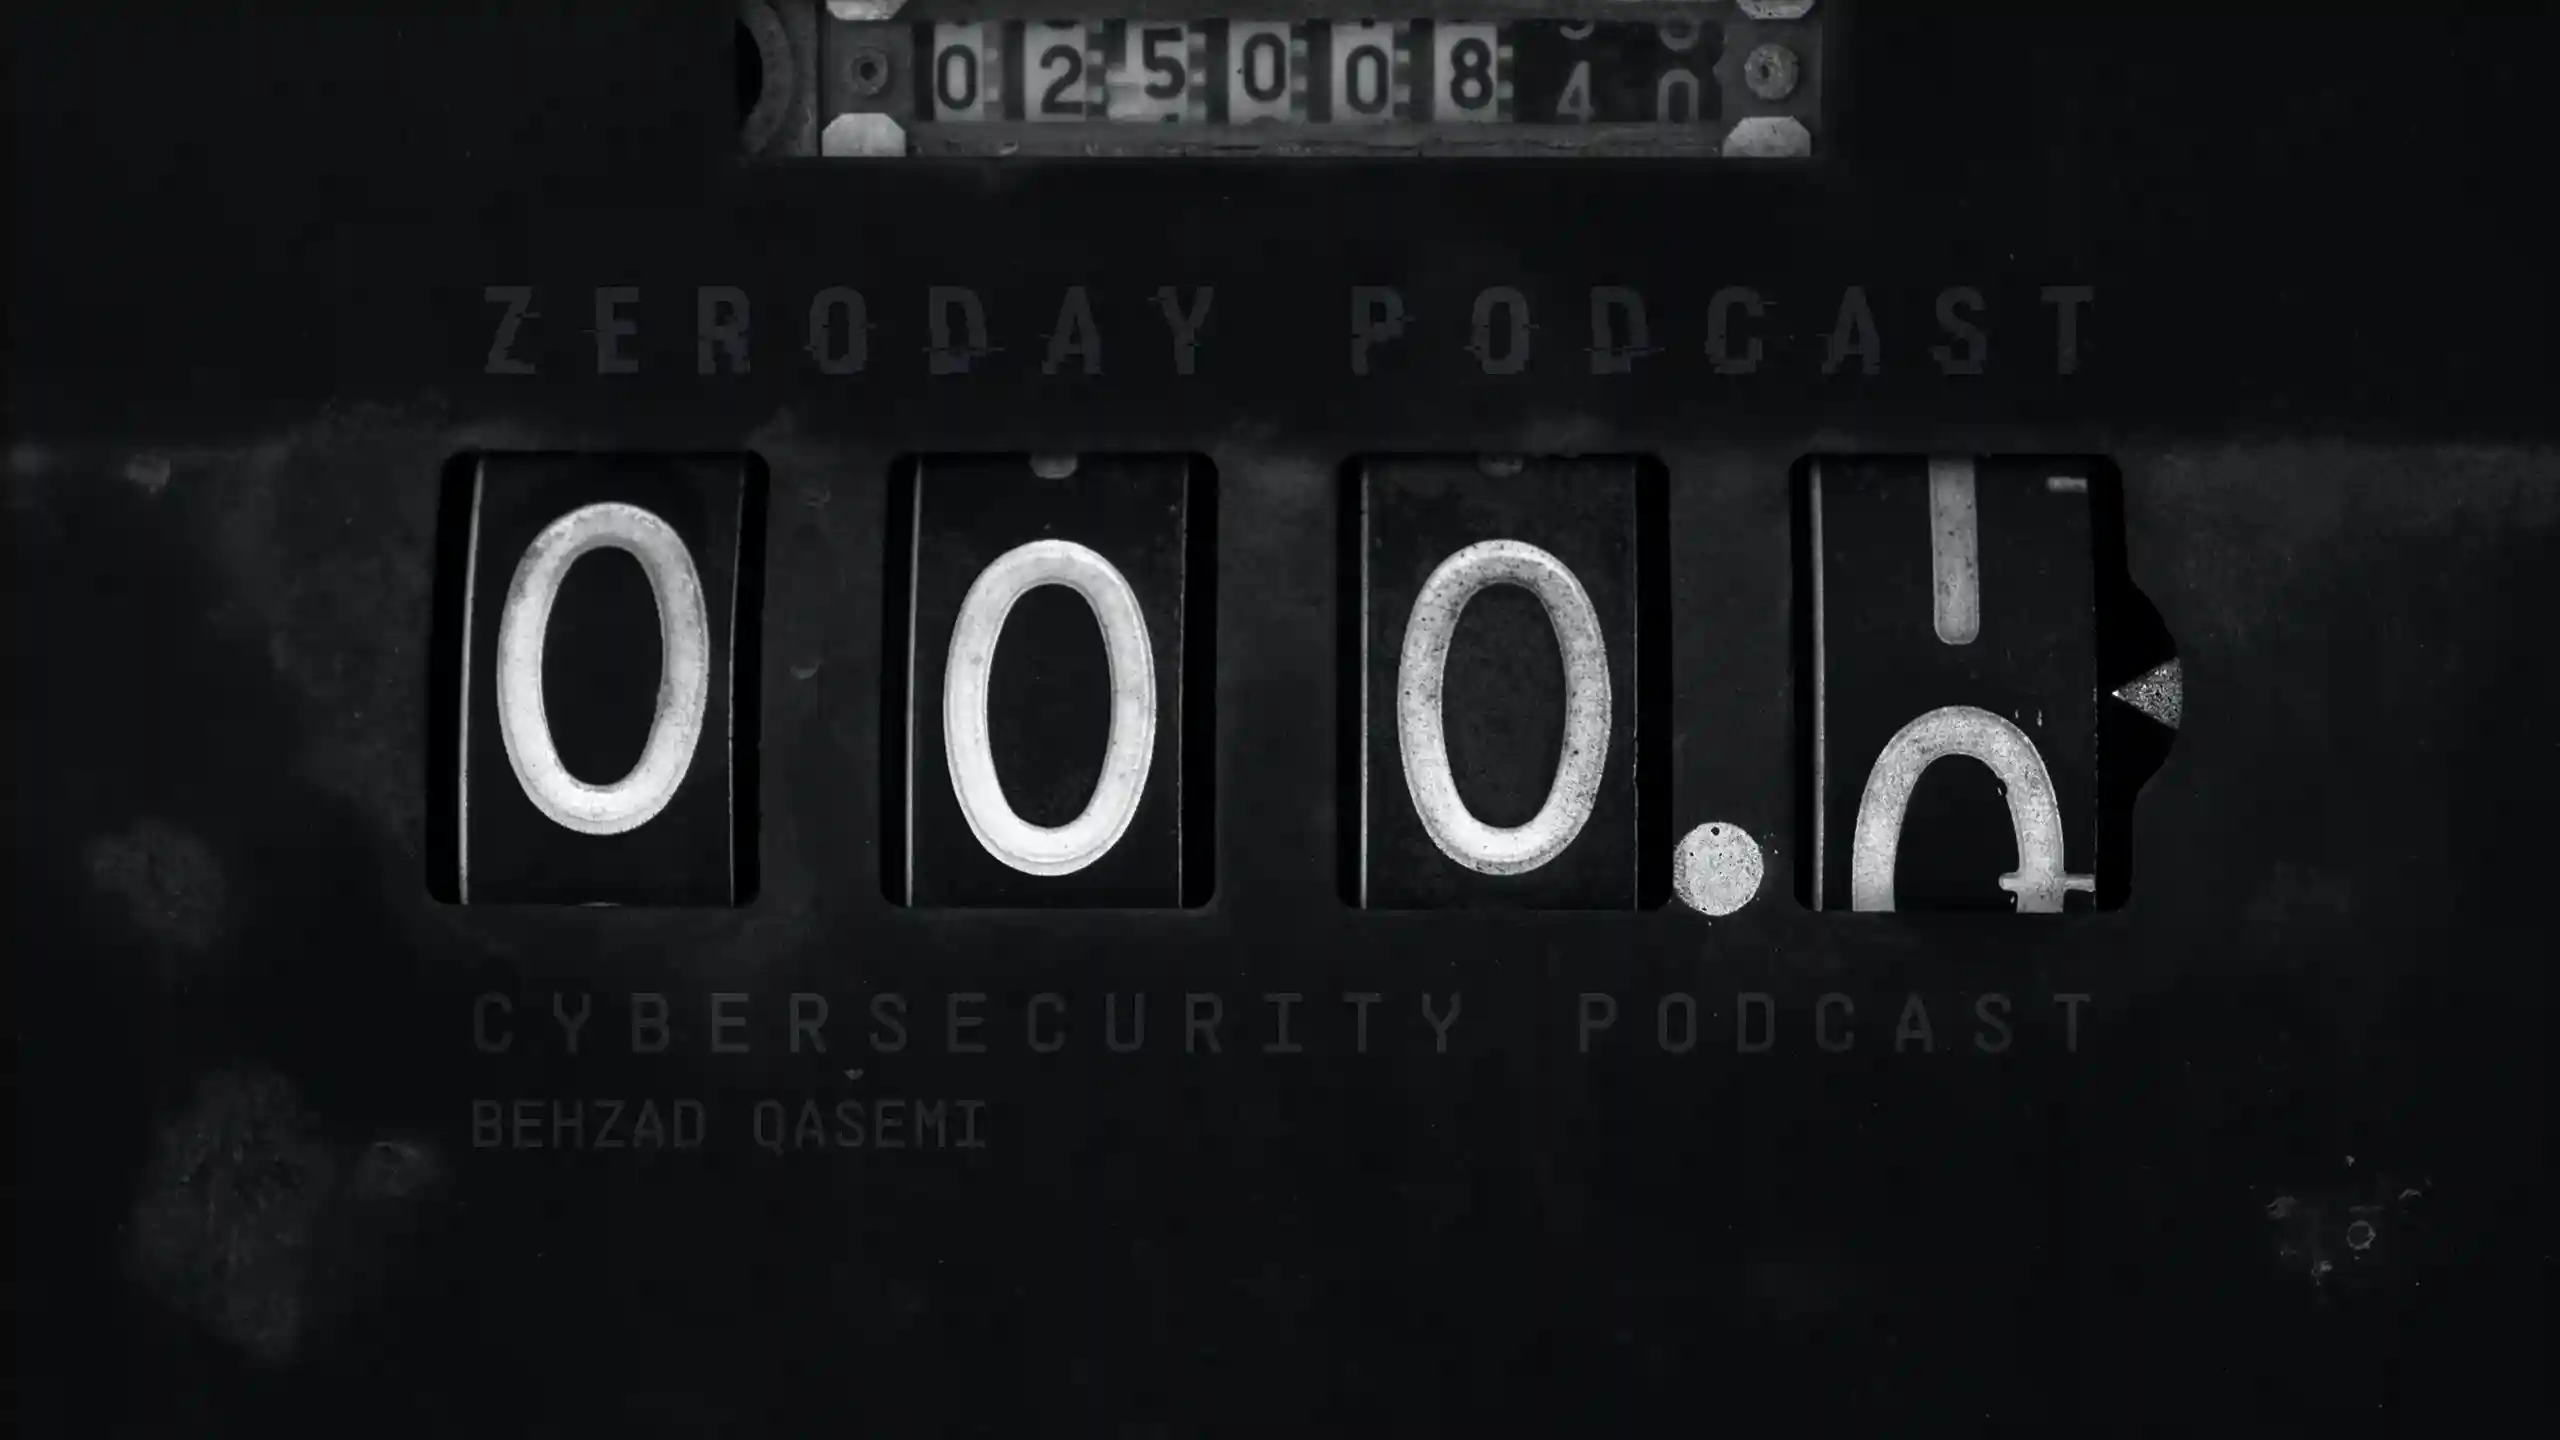 Zeroday Podcast